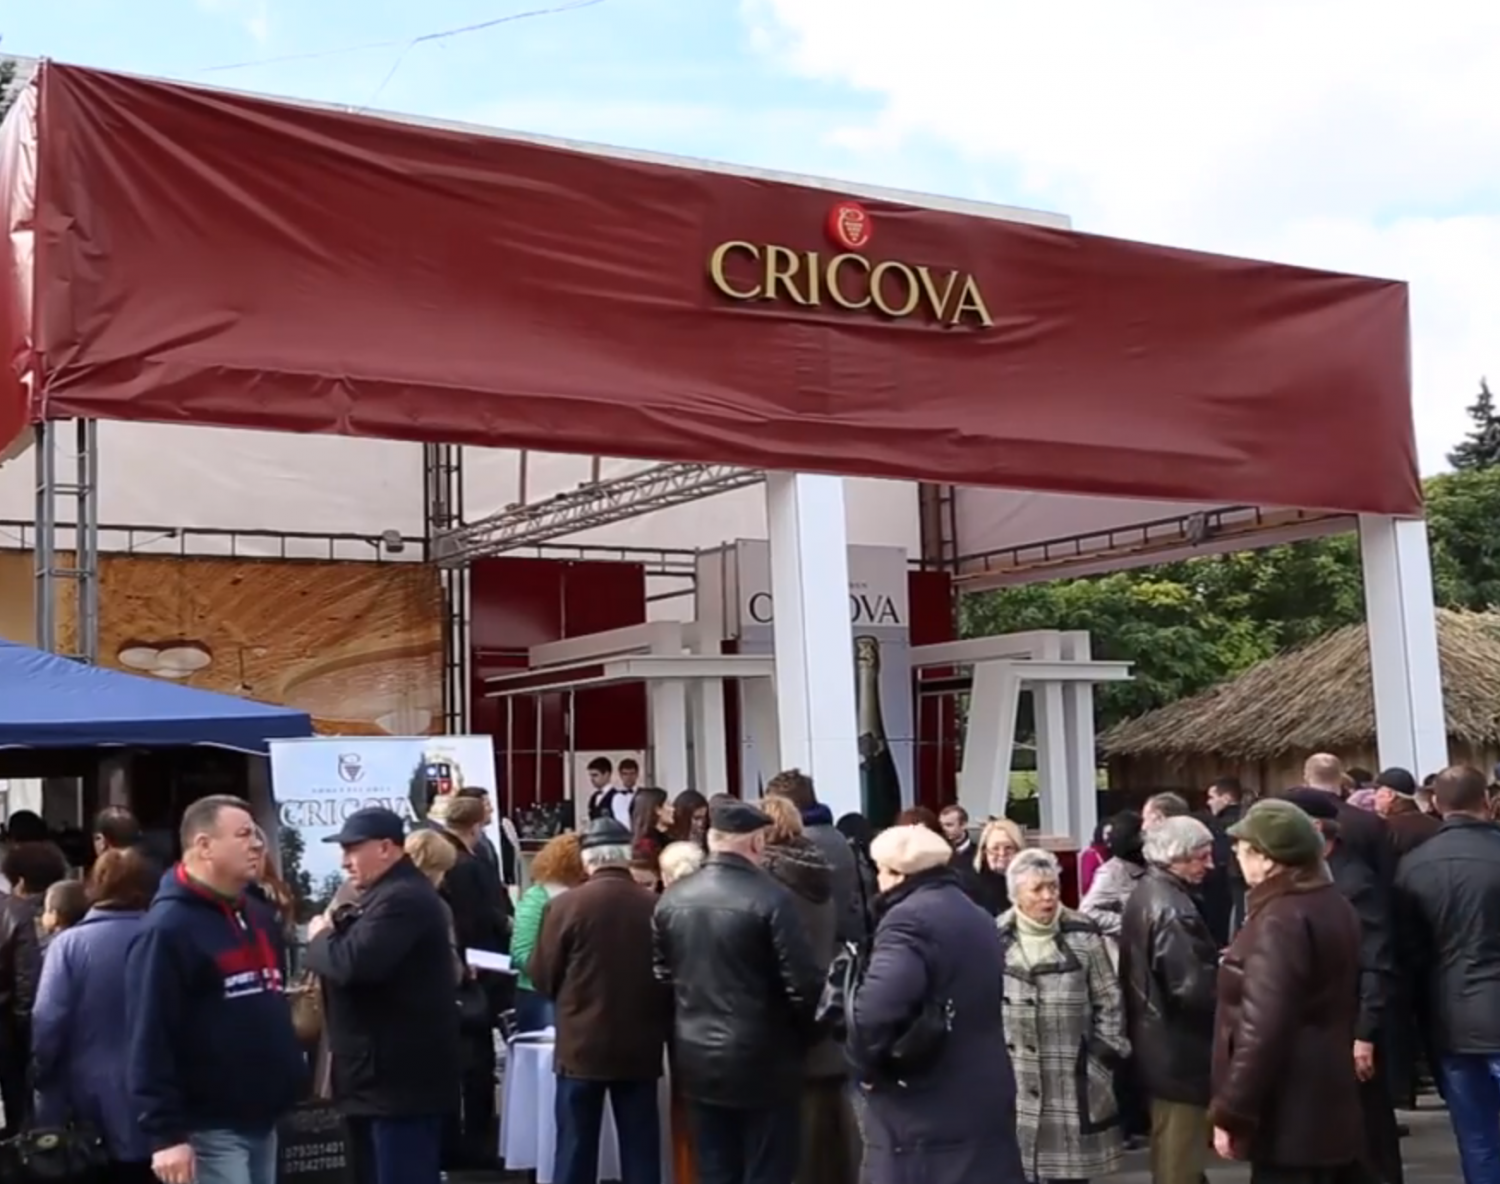 The Annual Moldova Wine Festival in Chisinau David's Been Here